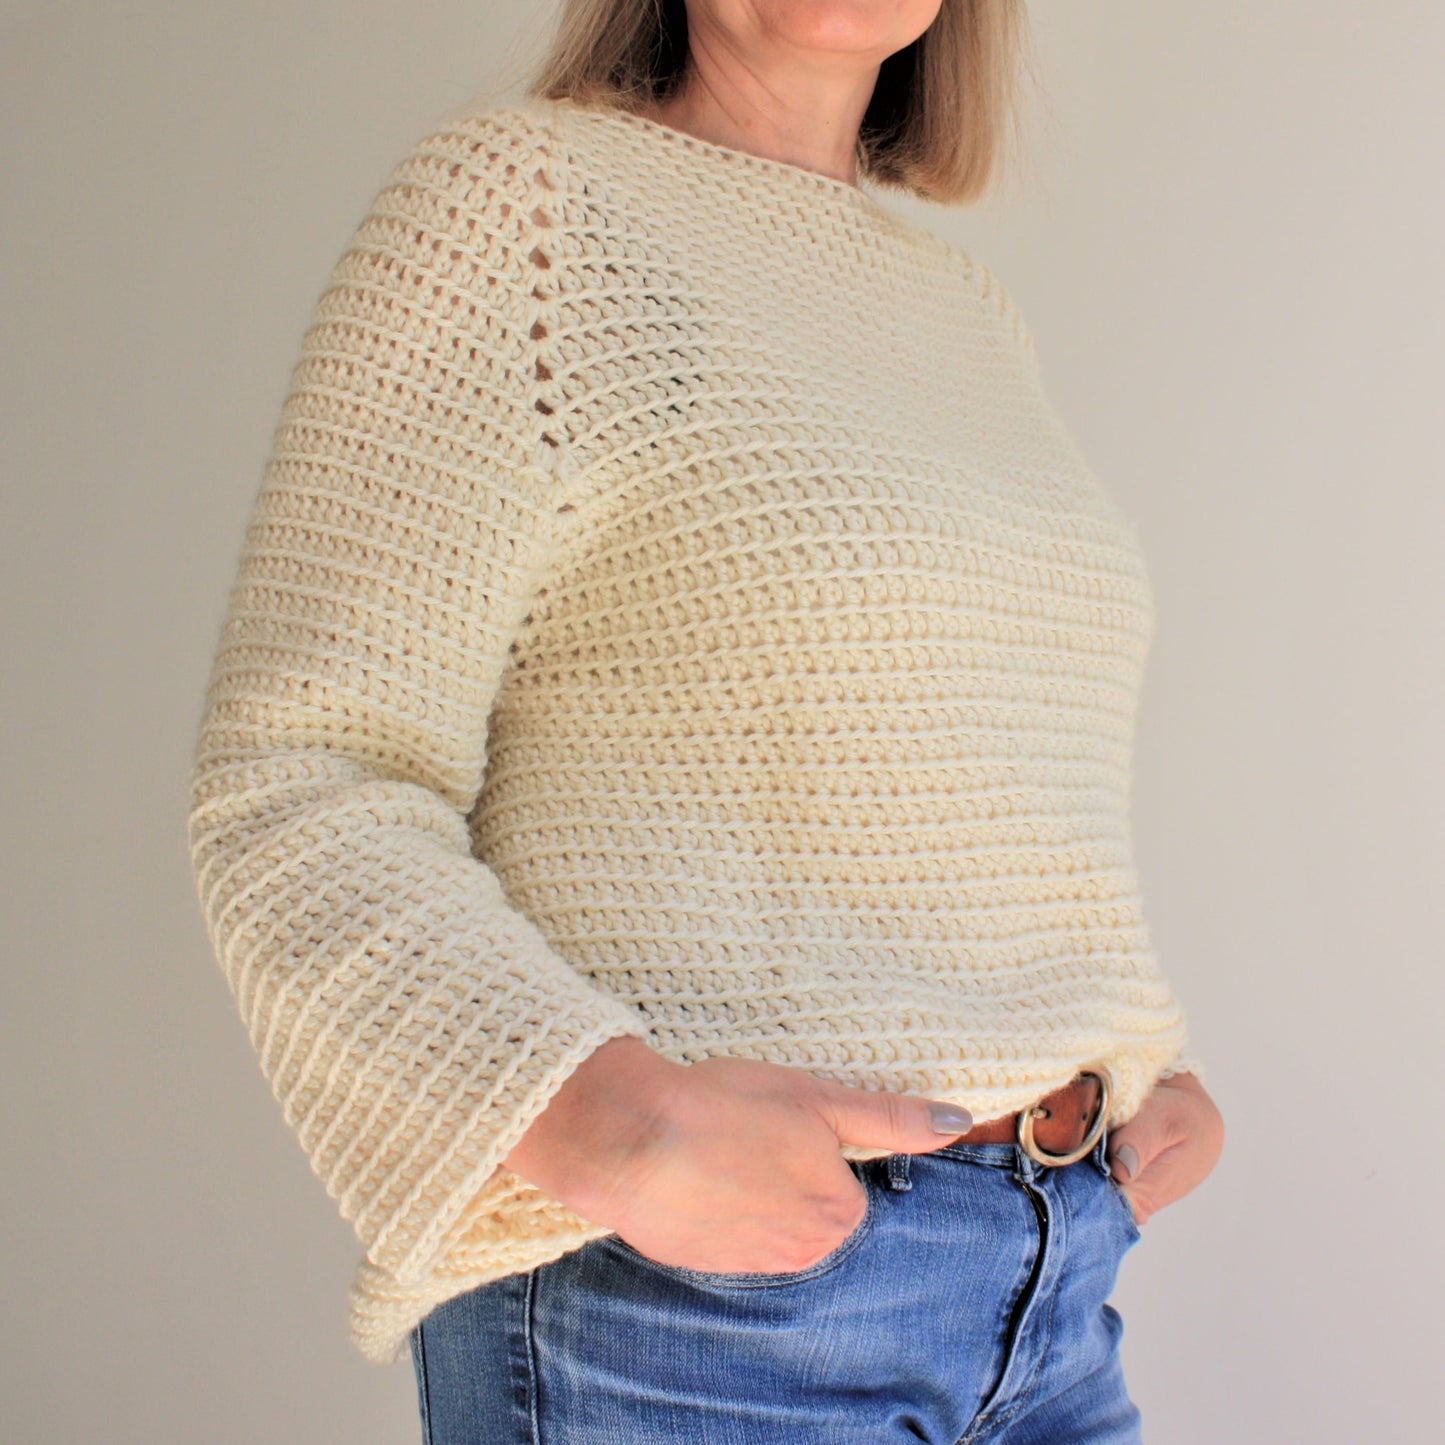 Easy Crochet Pattern - Top Down Raglan | St Ives Slouchy Sweater - King & Eye